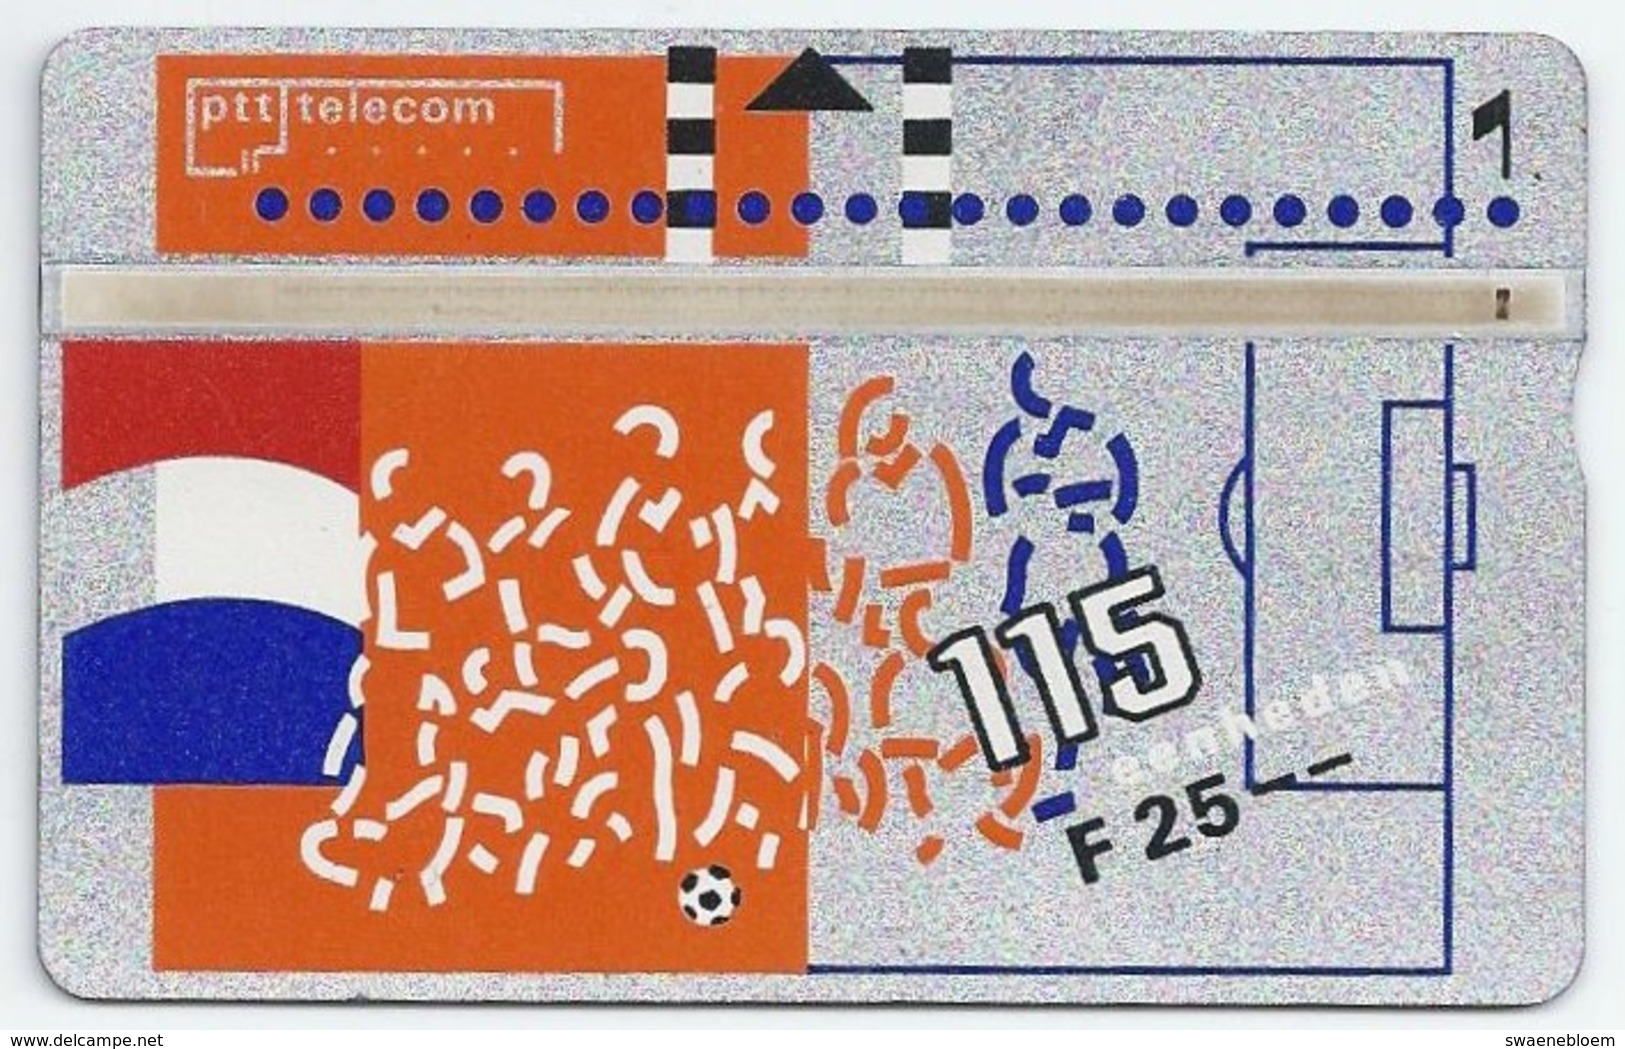 Telefoonkaart.- 131F. Nederland. PTT Telecom Is Officieel Sponsor Van De KNVB. Voetbal. Vlag. 25 Gulden. 115 Eenheden. - Publiques